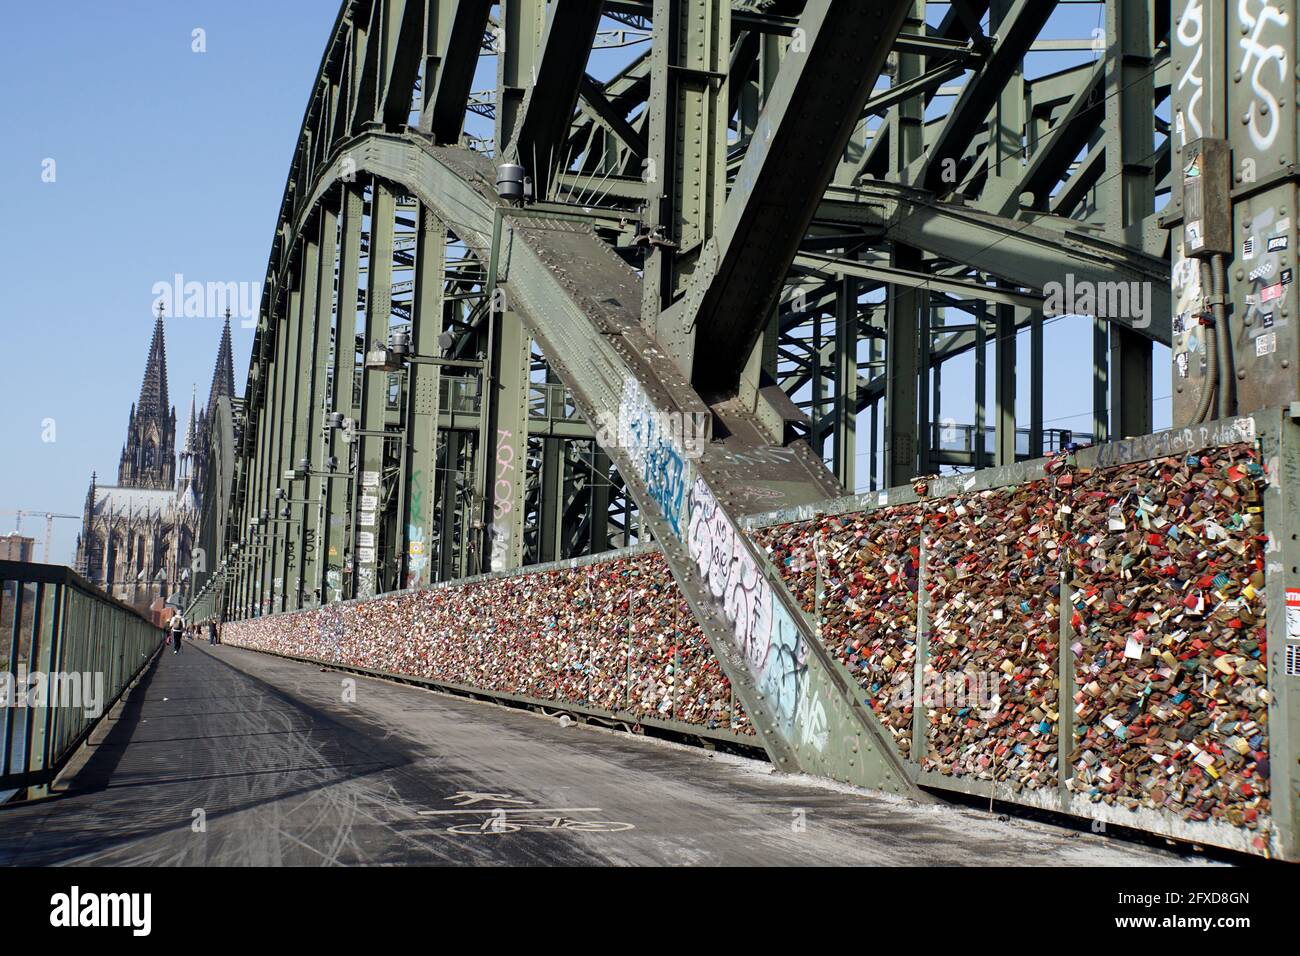 Touristenattraktion Liebsesschlösser auf der Hohenzollernbrücke, fast menschenleer während der Covid 19-Pandemie, Deutschland, Nordrhein-Westfalen, Lö Foto de stock